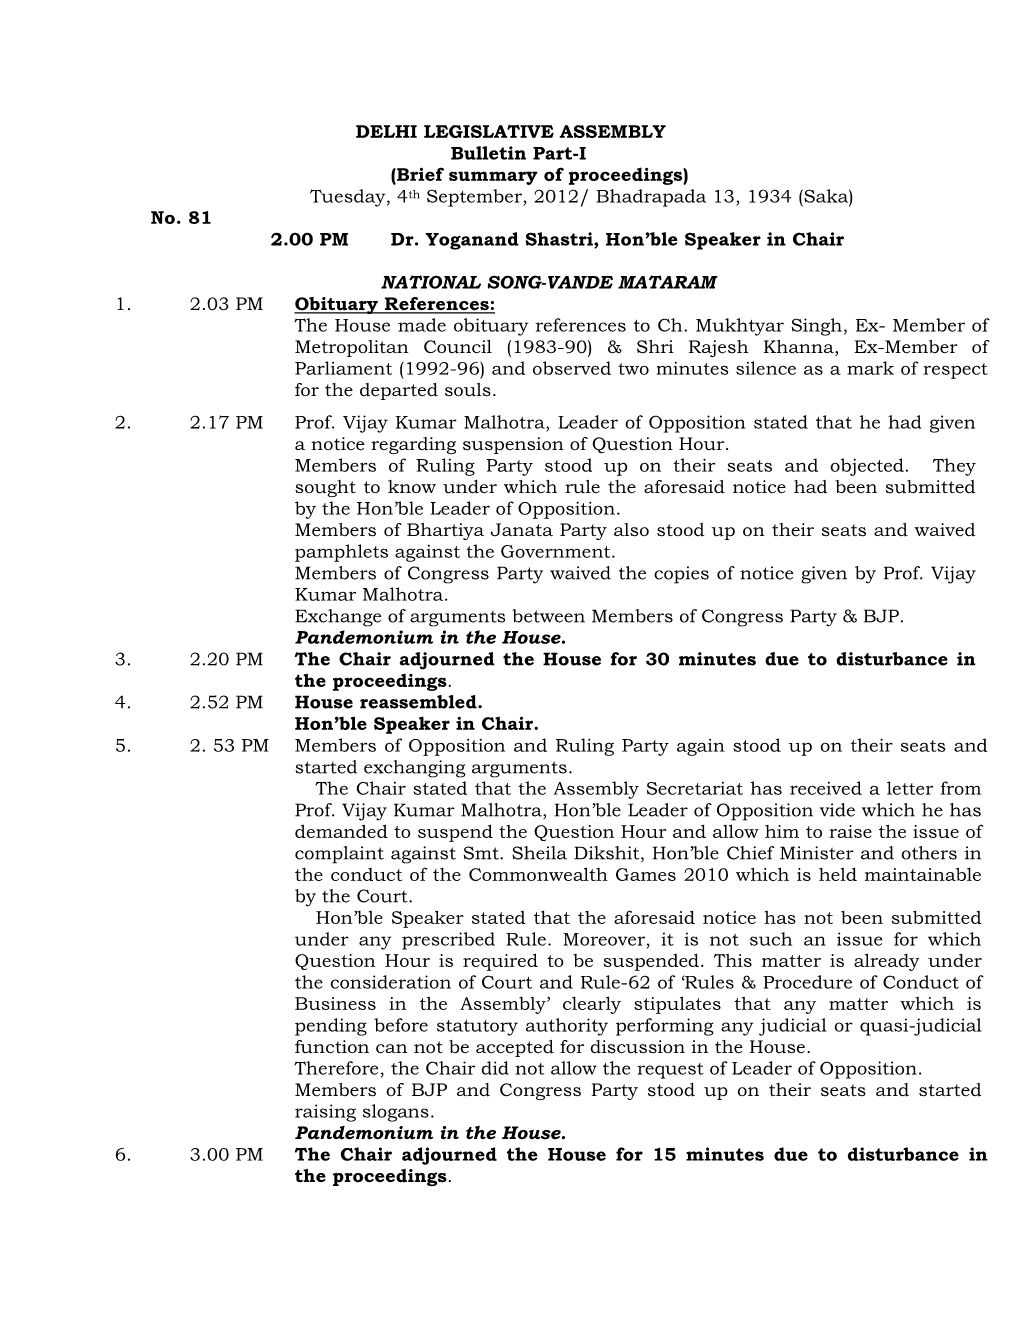 DELHI LEGISLATIVE ASSEMBLY Bulletin Part-I (Brief Summary of Proceedings) Tuesday, 4Th September, 2012/ Bhadrapada 13, 1934 (Saka) No